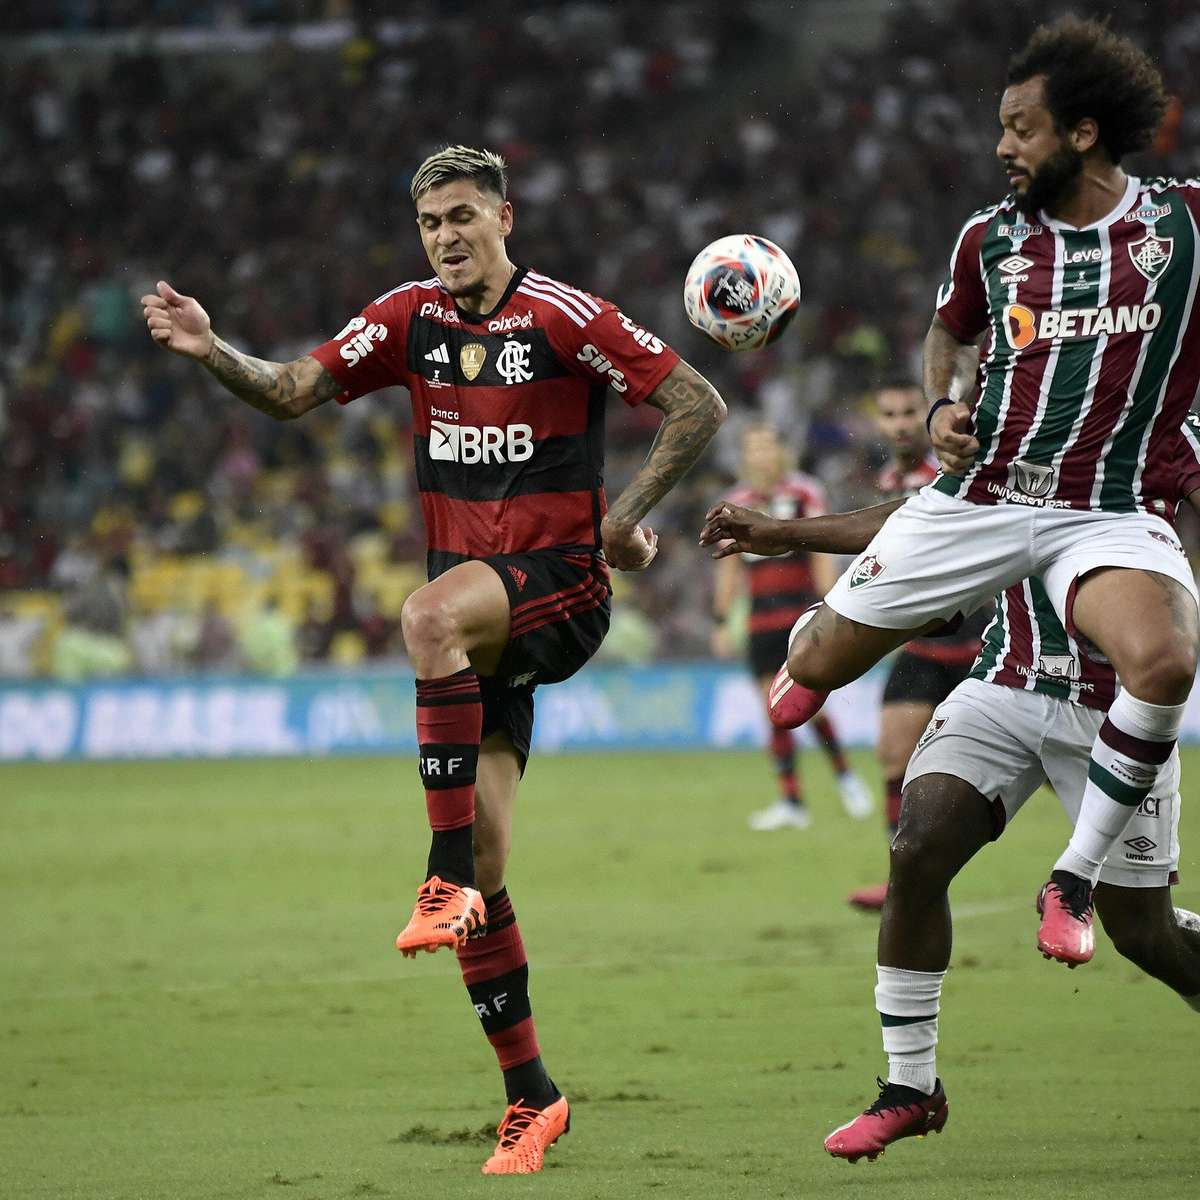 Clássico paulista e novo duelo entre Fla e Athletico-PR marcam quartas de  final da Copa do Brasil